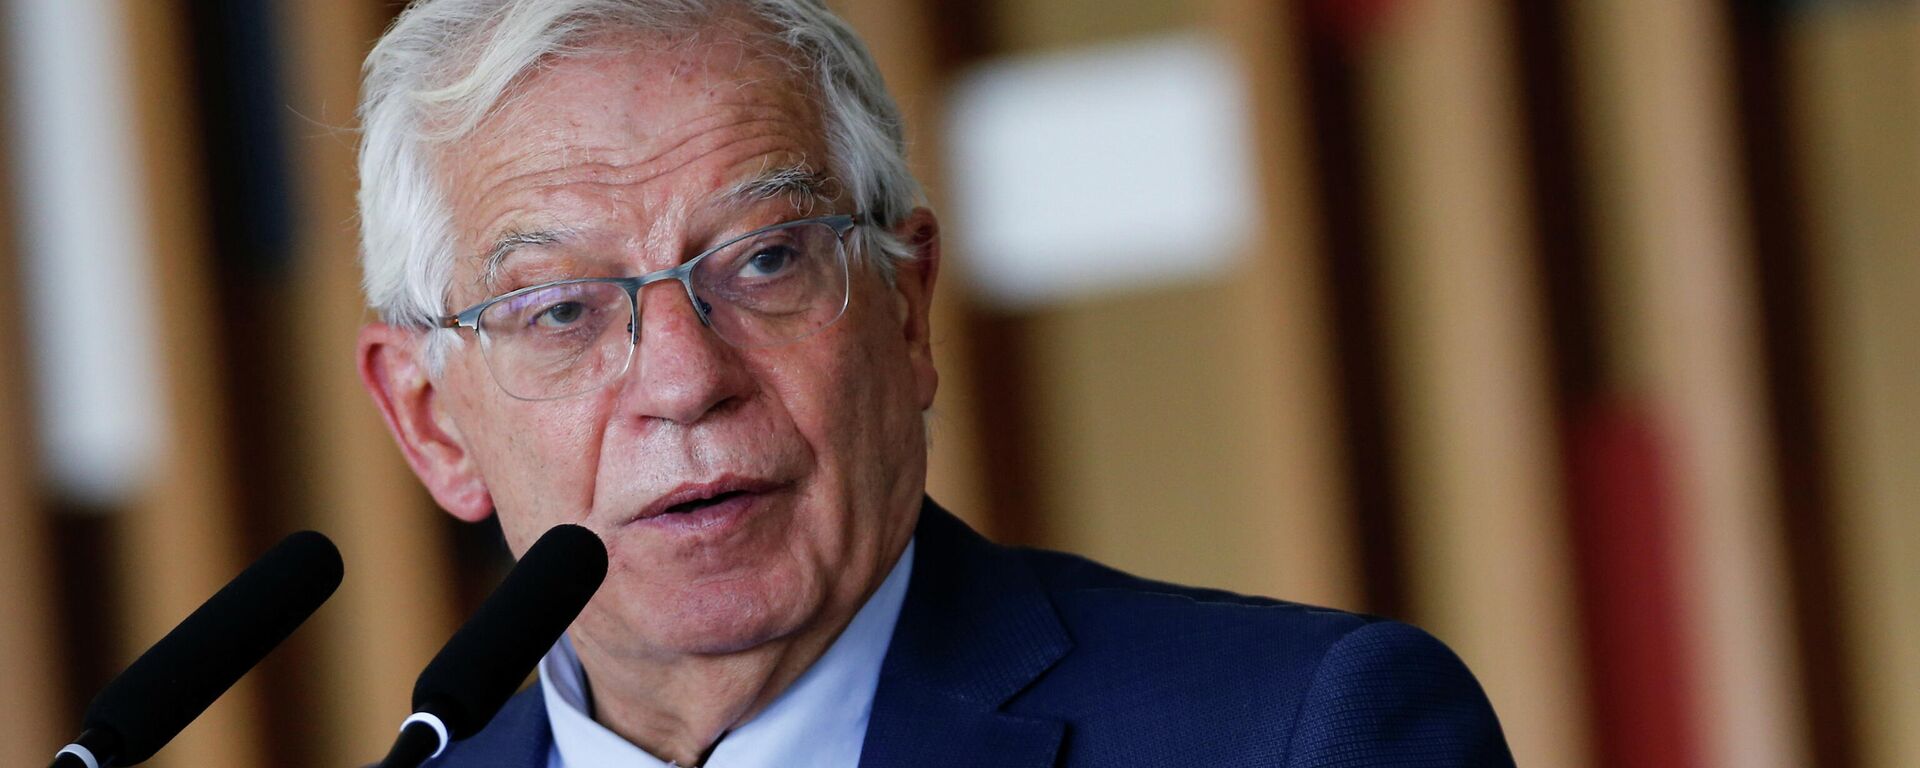 Josep Borrell, alto representante de la Unión Europea para Asuntos Exteriores y Política de Seguridad y vicepresidente de la Comisión Europea - Sputnik Mundo, 1920, 22.11.2021